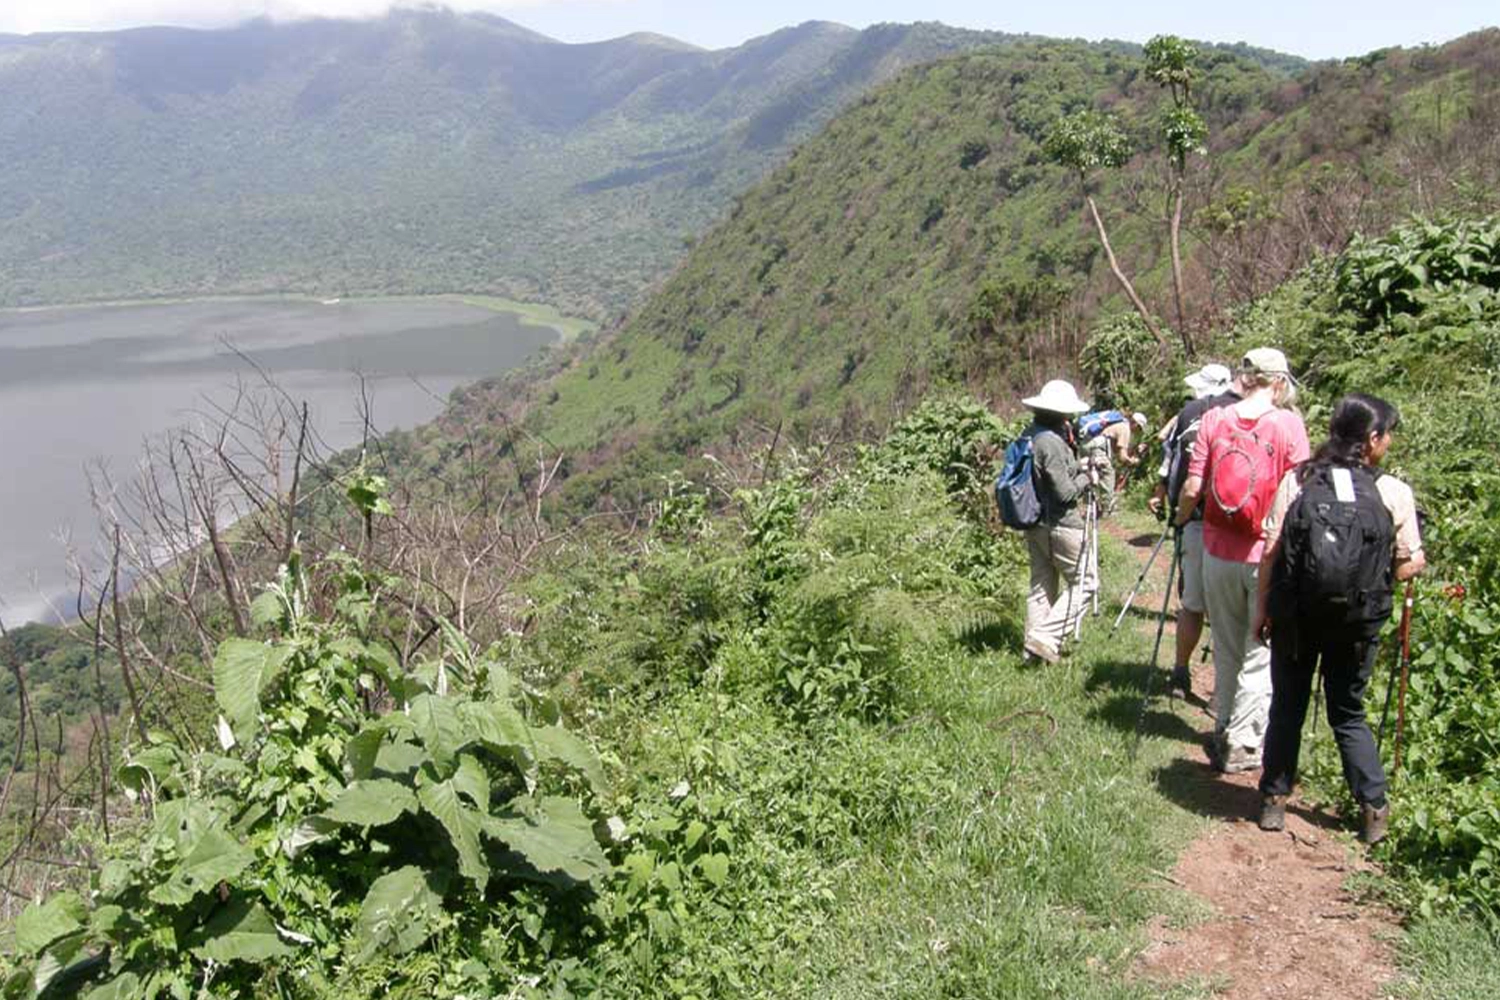 Ngorongoro walking tour